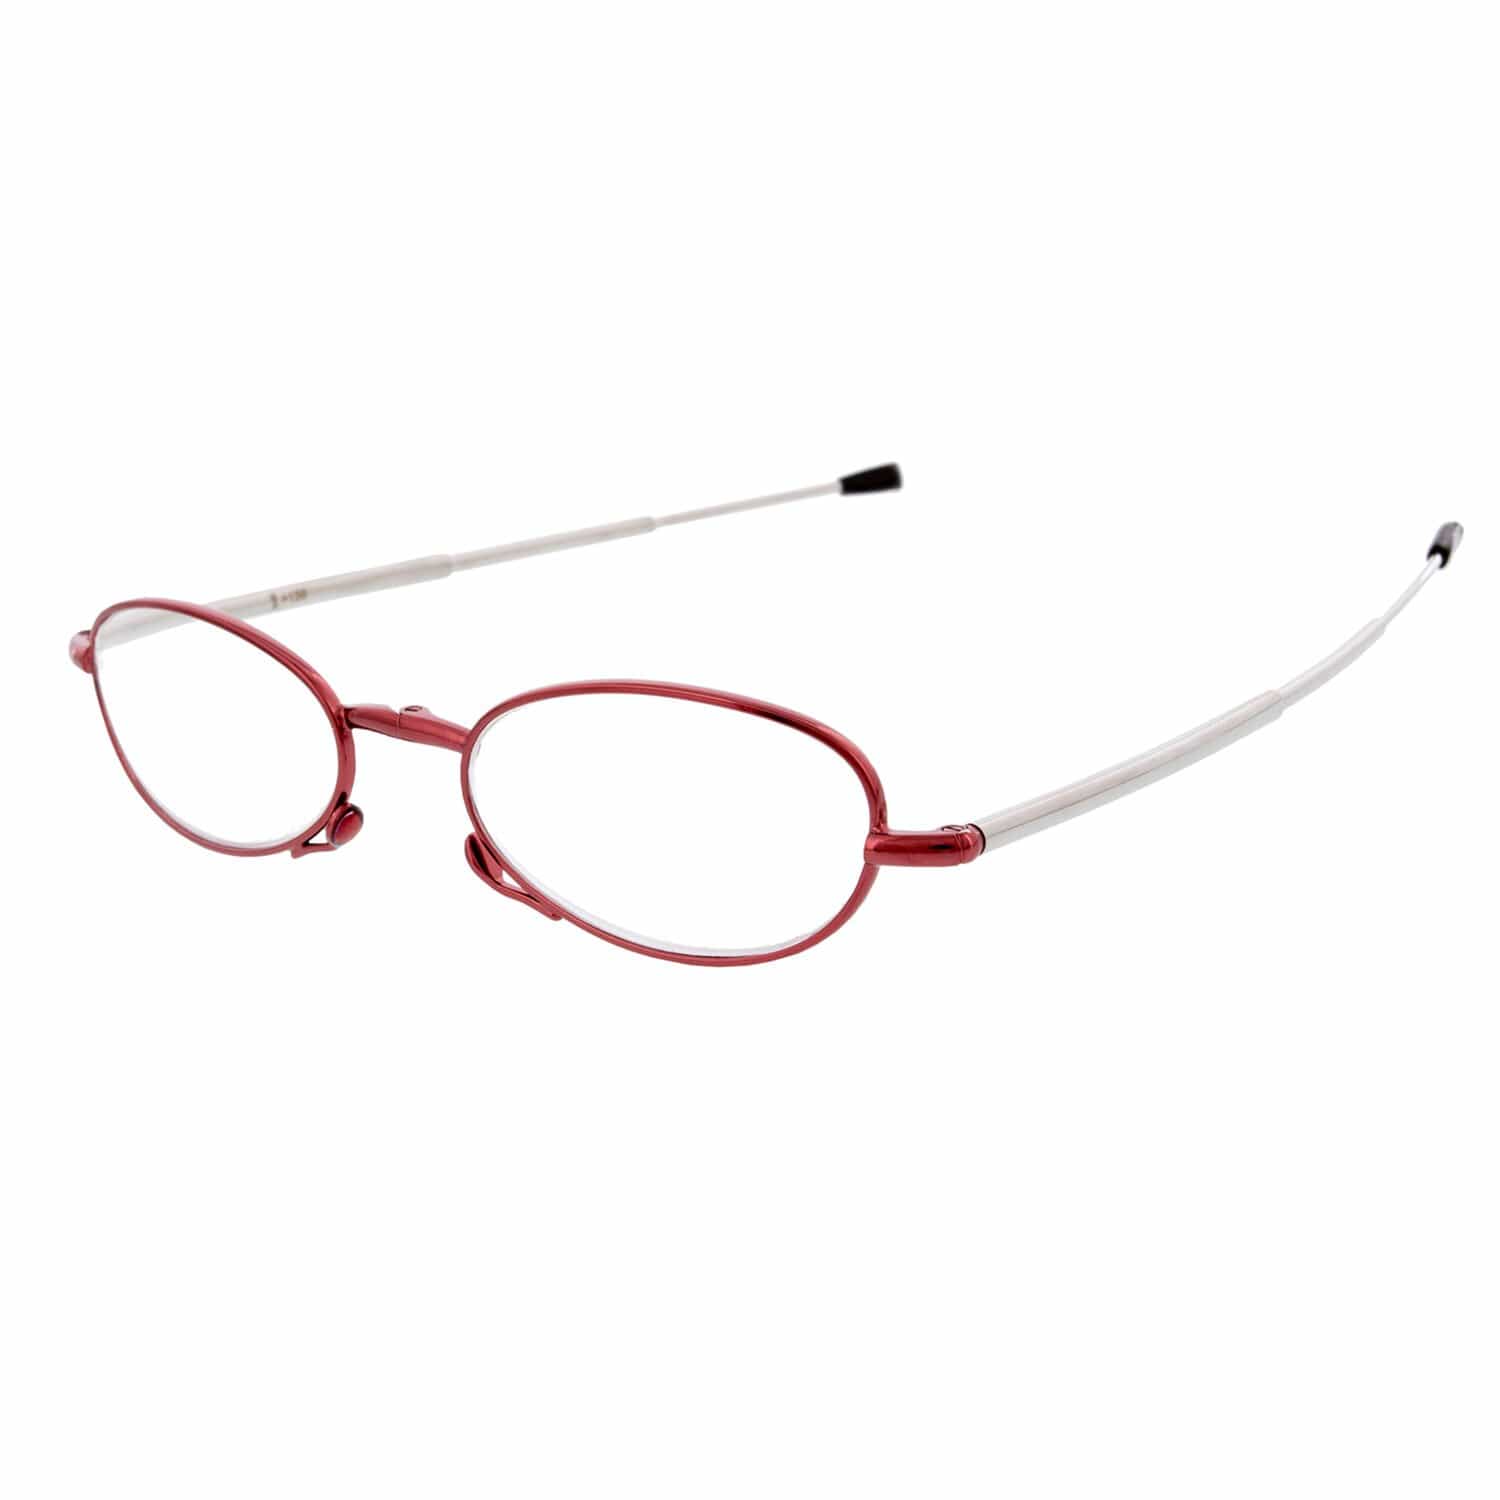 Bundle & Save - Ultimate 6-pack | Buy Neckglasses | BuyNeckglasses